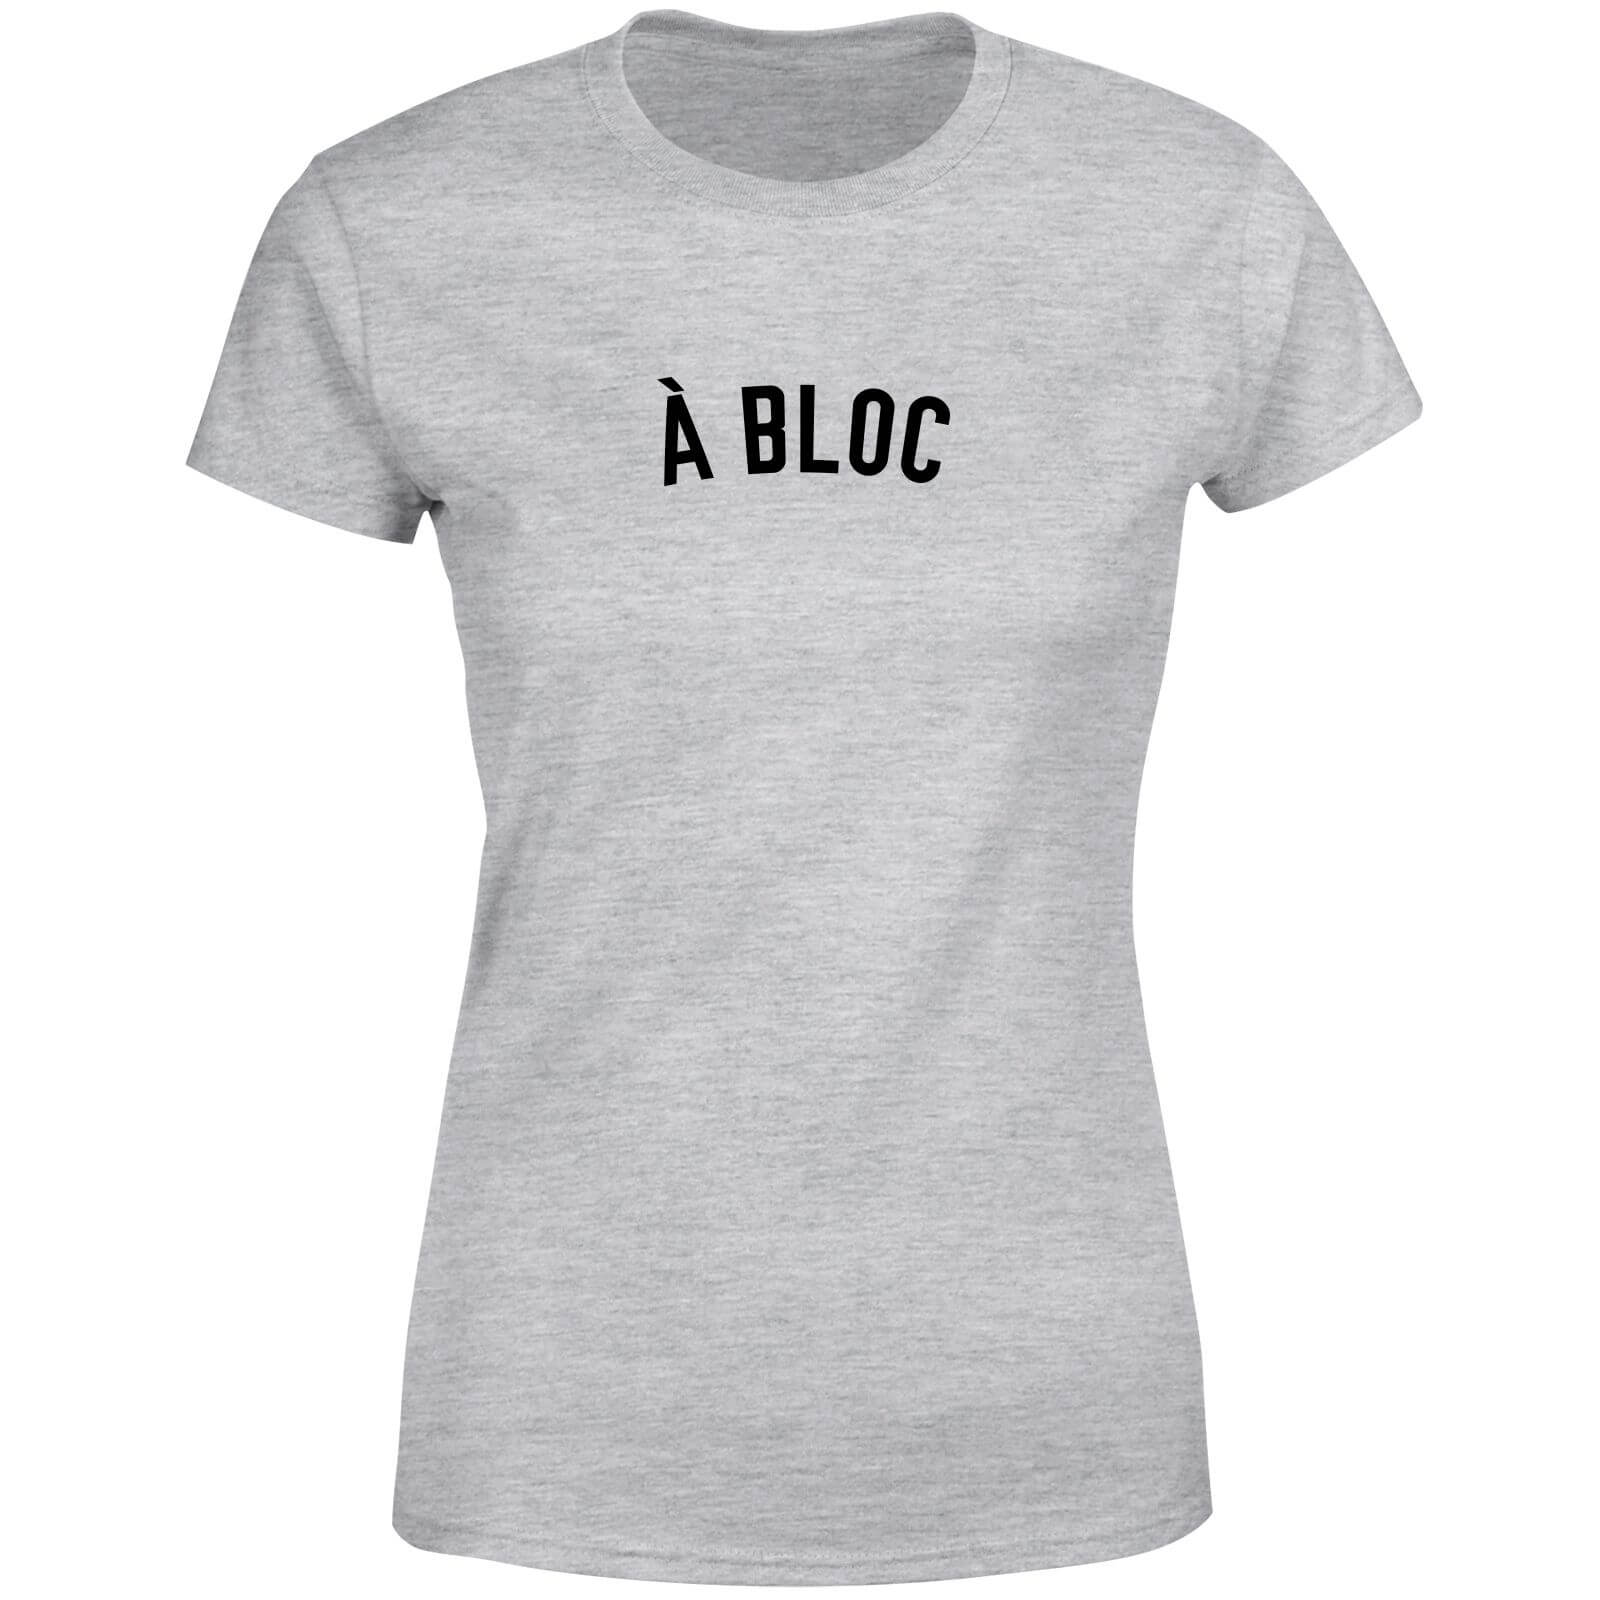 A Bloc Women's T-Shirt - Grey - XS - Grey